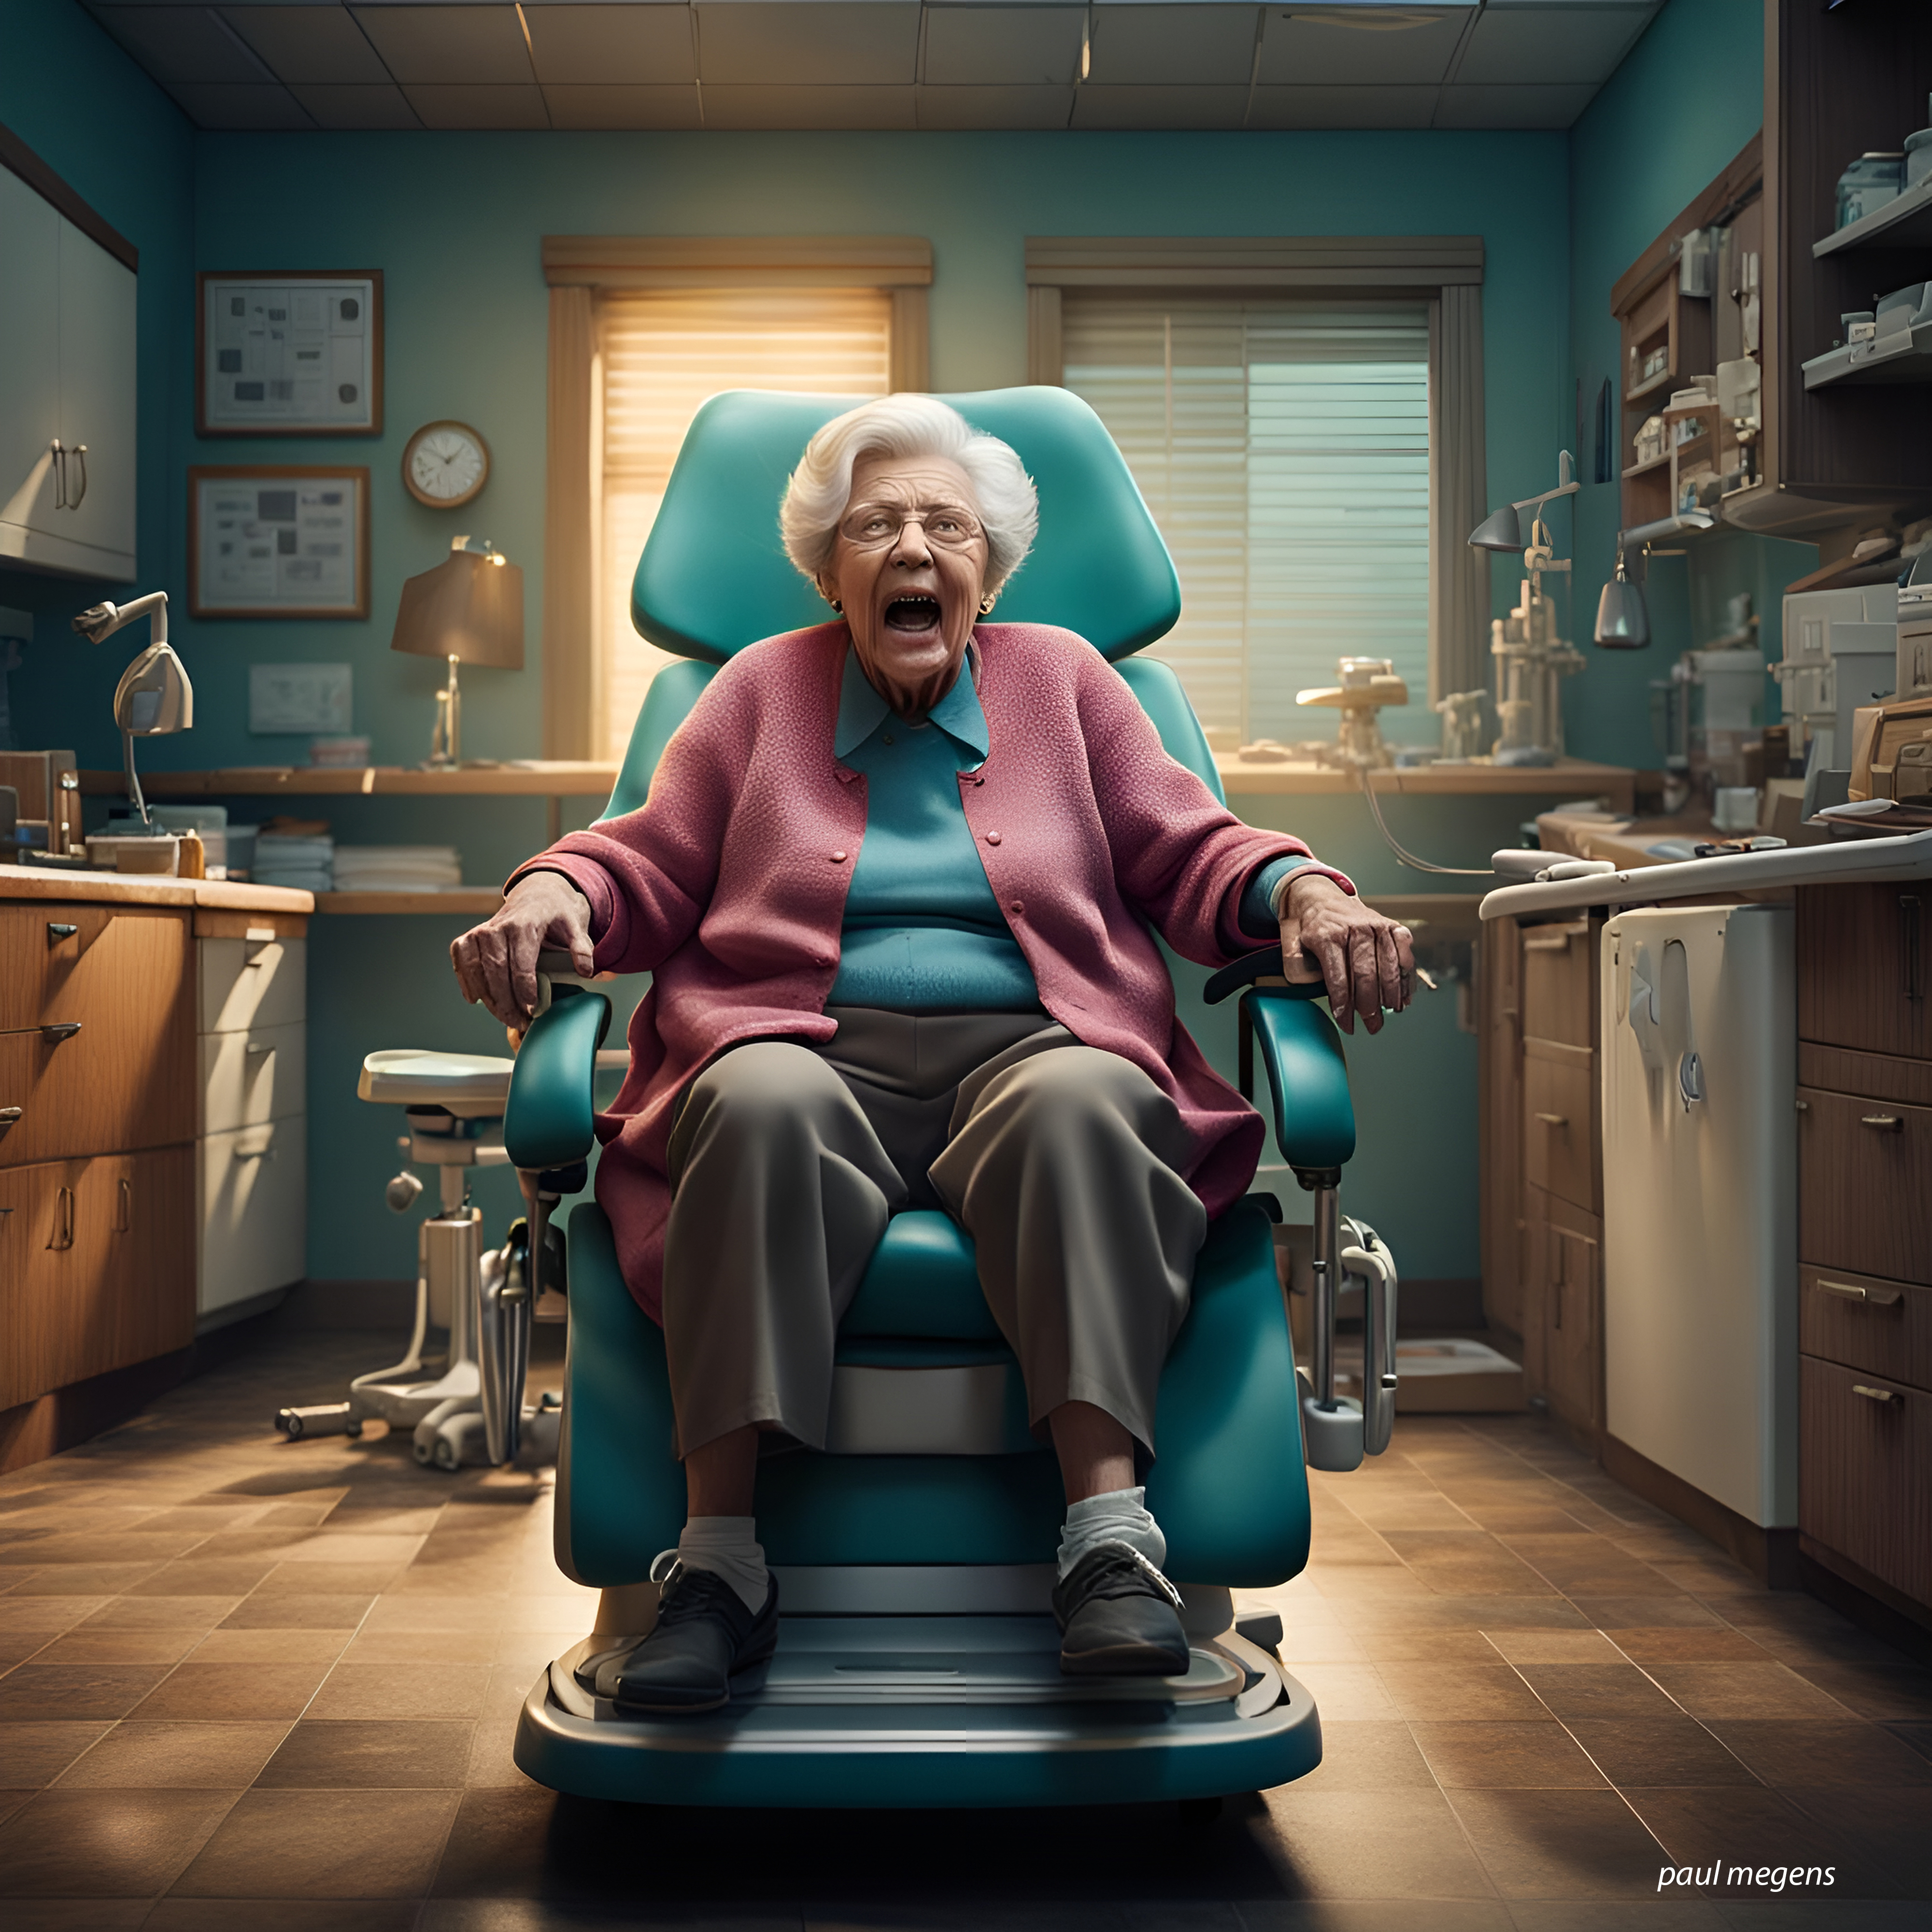 grandma in the dentist chair